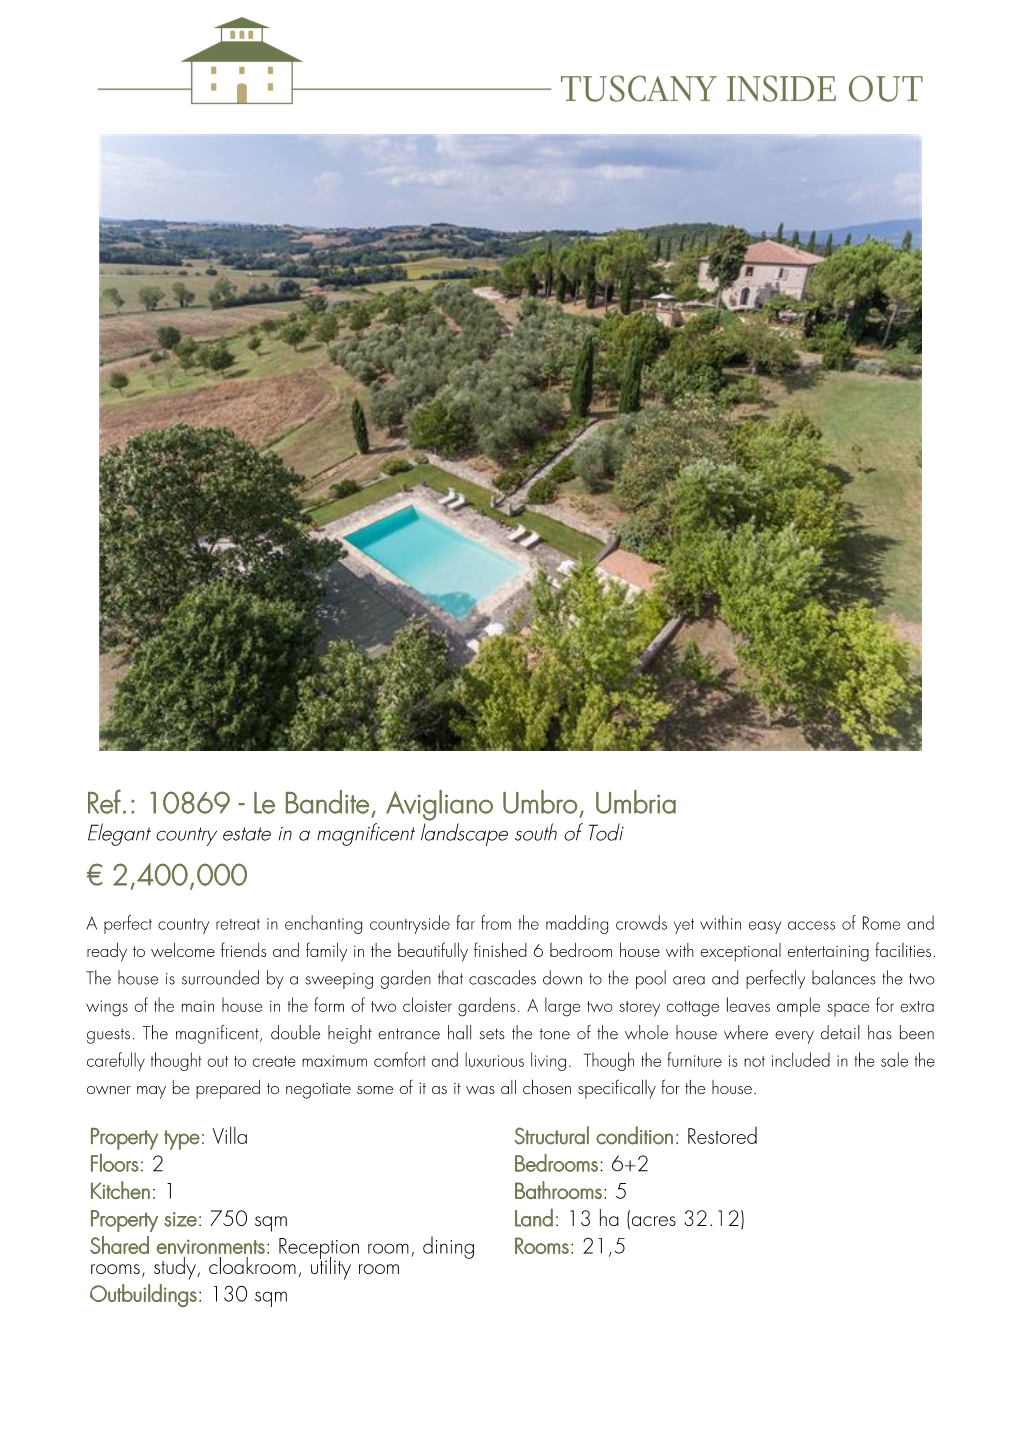 10869 - Le Bandite, Avigliano Umbro, Umbria Elegant Country Estate in a Magnificent Landscape South of Todi